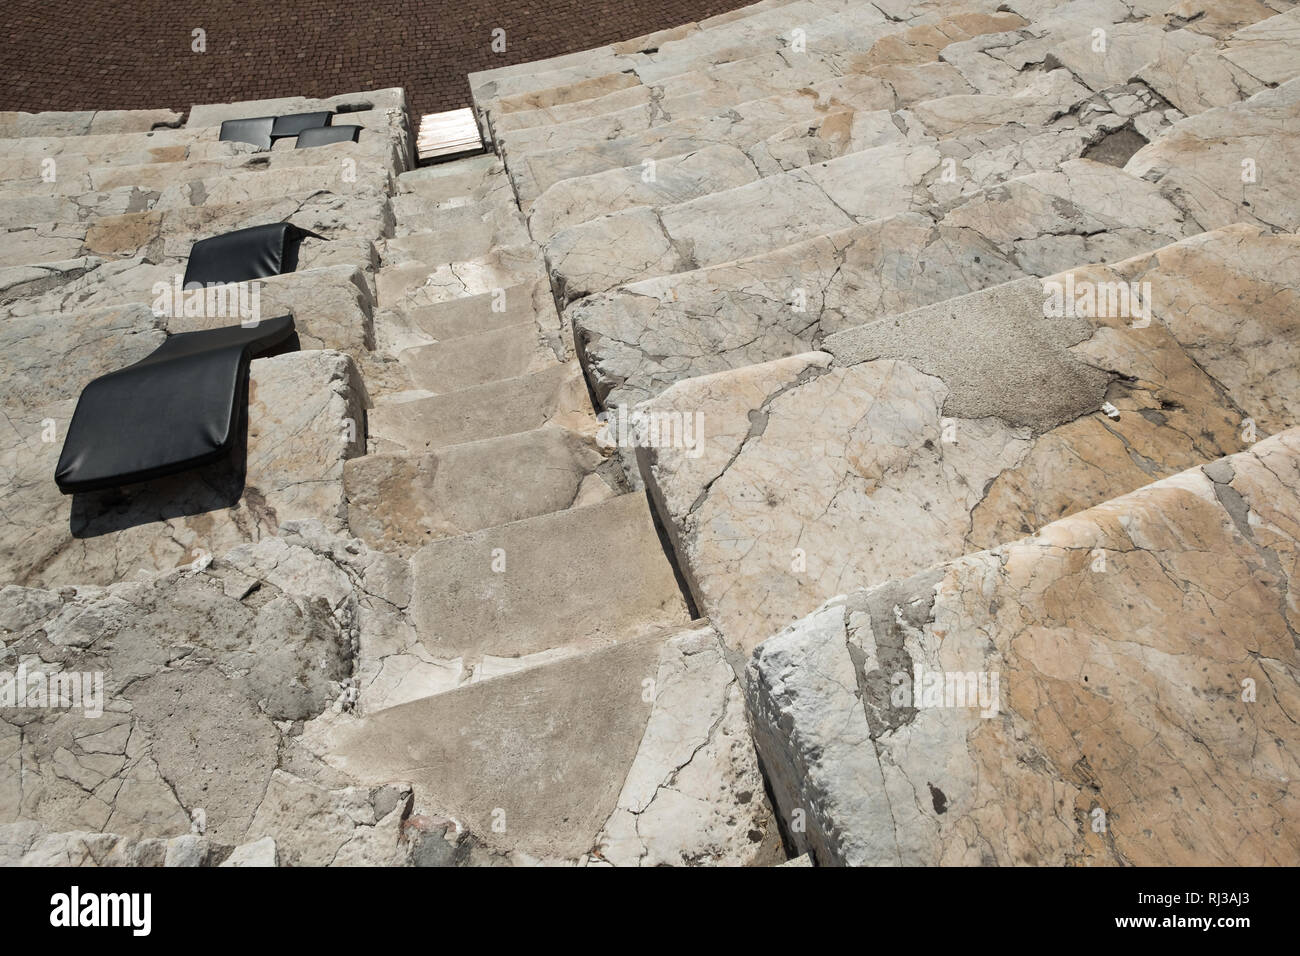 Vista ravvicinata della sezione dei passaggi e posti a sedere in Plovdiv antico stadio romano. Gradini di marmo e le sedi sono state chiaramente utilizzati ben oltre il millenia. Foto Stock